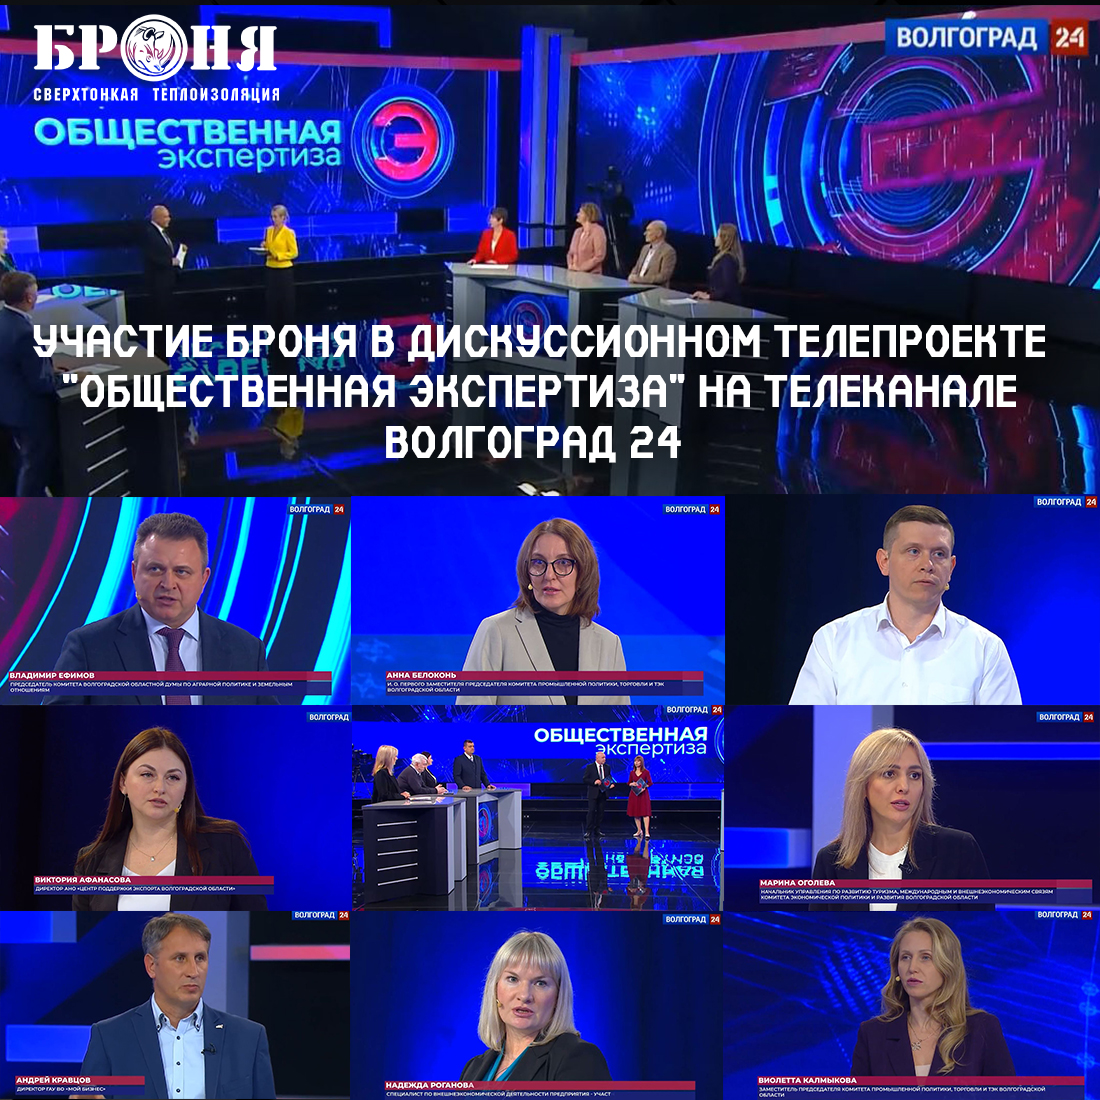 Участие Броня в дискуссионном телепроекте "Общественная экспертиза" на телеканале Волгоград 24 (телепередача)